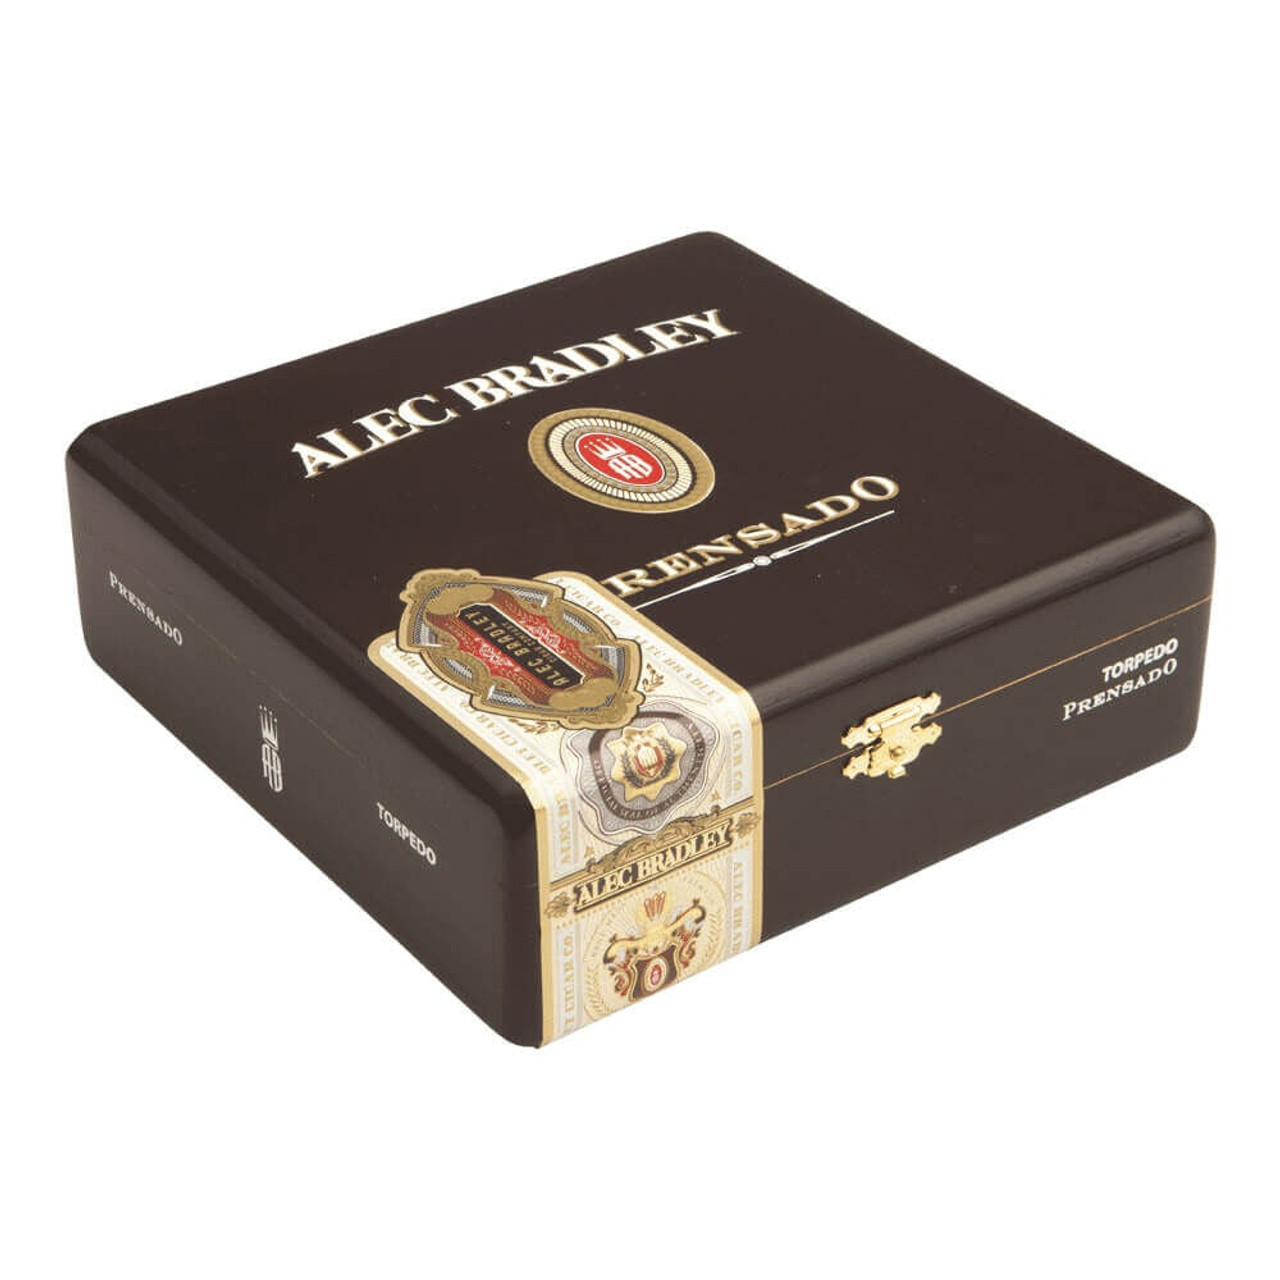 Alec Bradley Prensado Torpedo Cigars - 6.12 x 52 (Box of 24) *Box